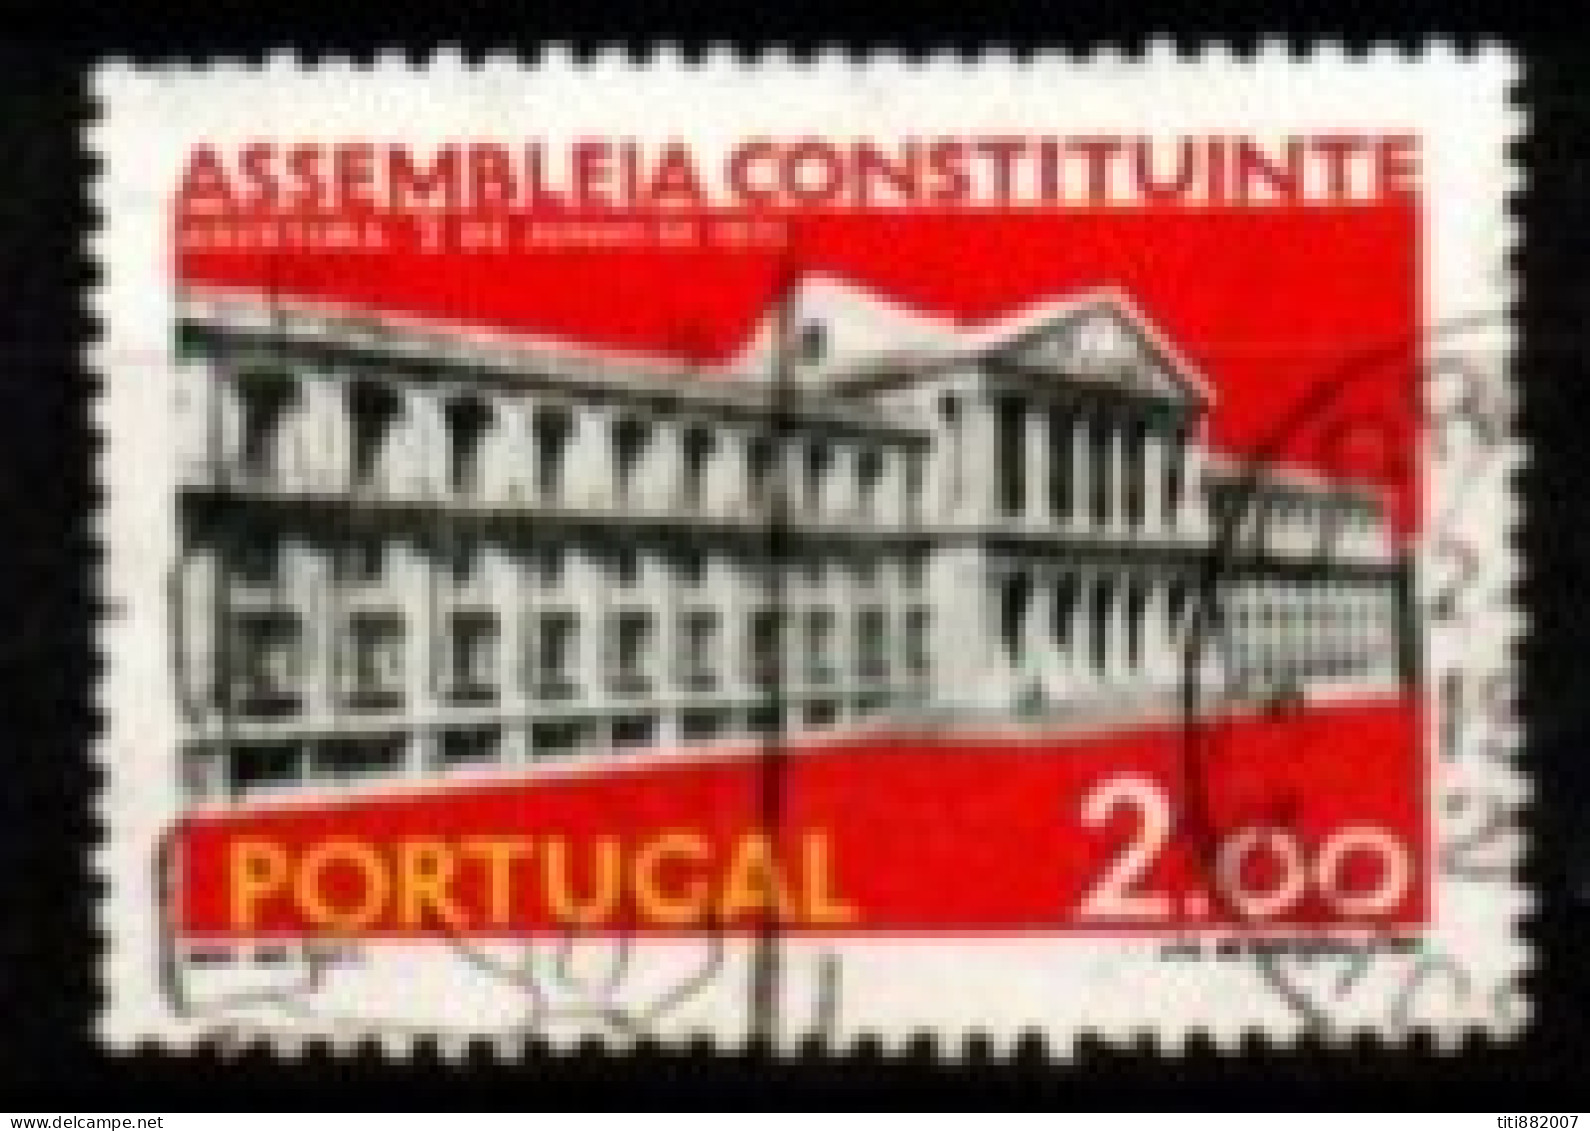 PORTUGAL    -   1975.    Y&T N° 1263 Oblitéré.  Assemblée Constituante - Used Stamps